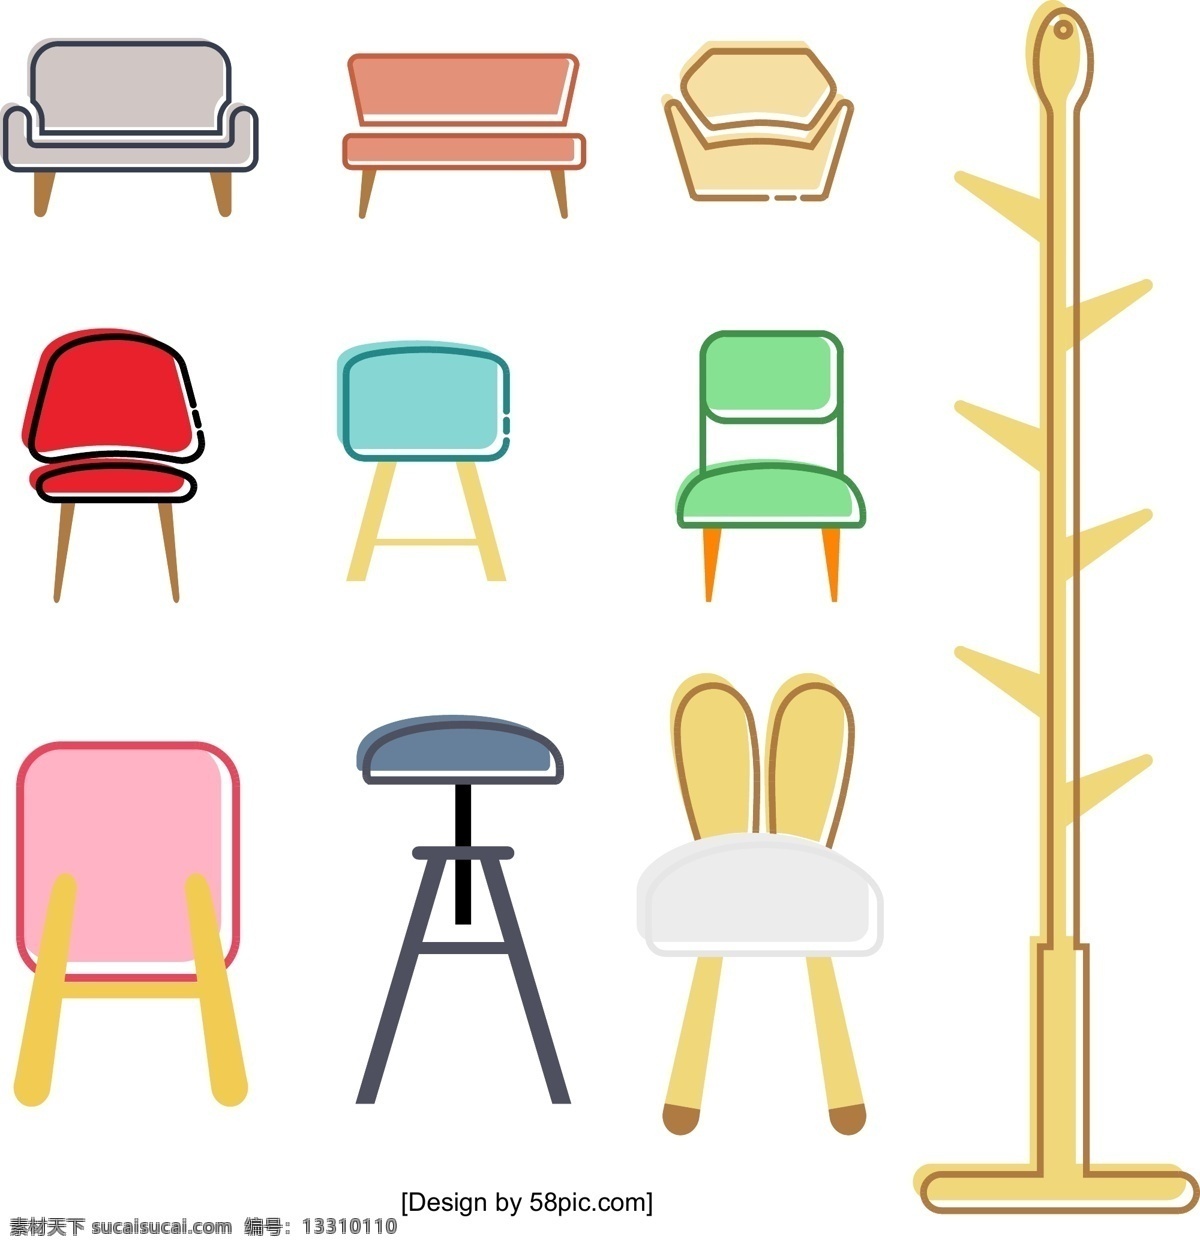 创意 扁平化 家具 商用 元素 沙发 衣架 椅子 凳子 双人沙发 单人沙发 沙发椅 儿童沙发凳 儿童板凳 儿童椅子 升降凳子 酒吧凳 挂衣架